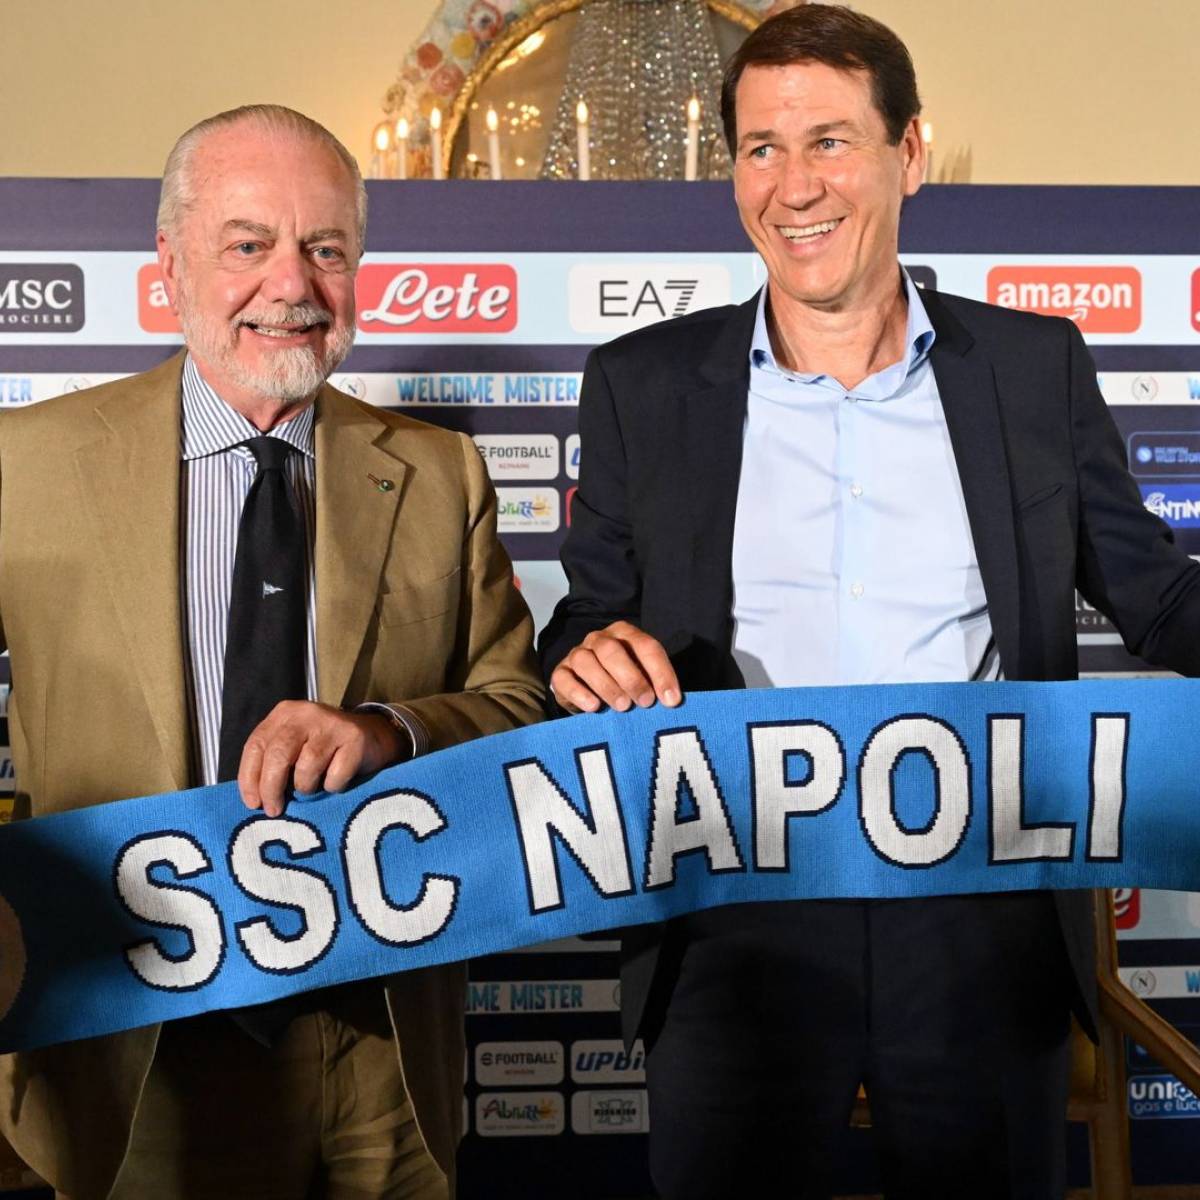 Mercato - Une offre de 100 millions pour Naples, le PSG est innocent - Foot  01